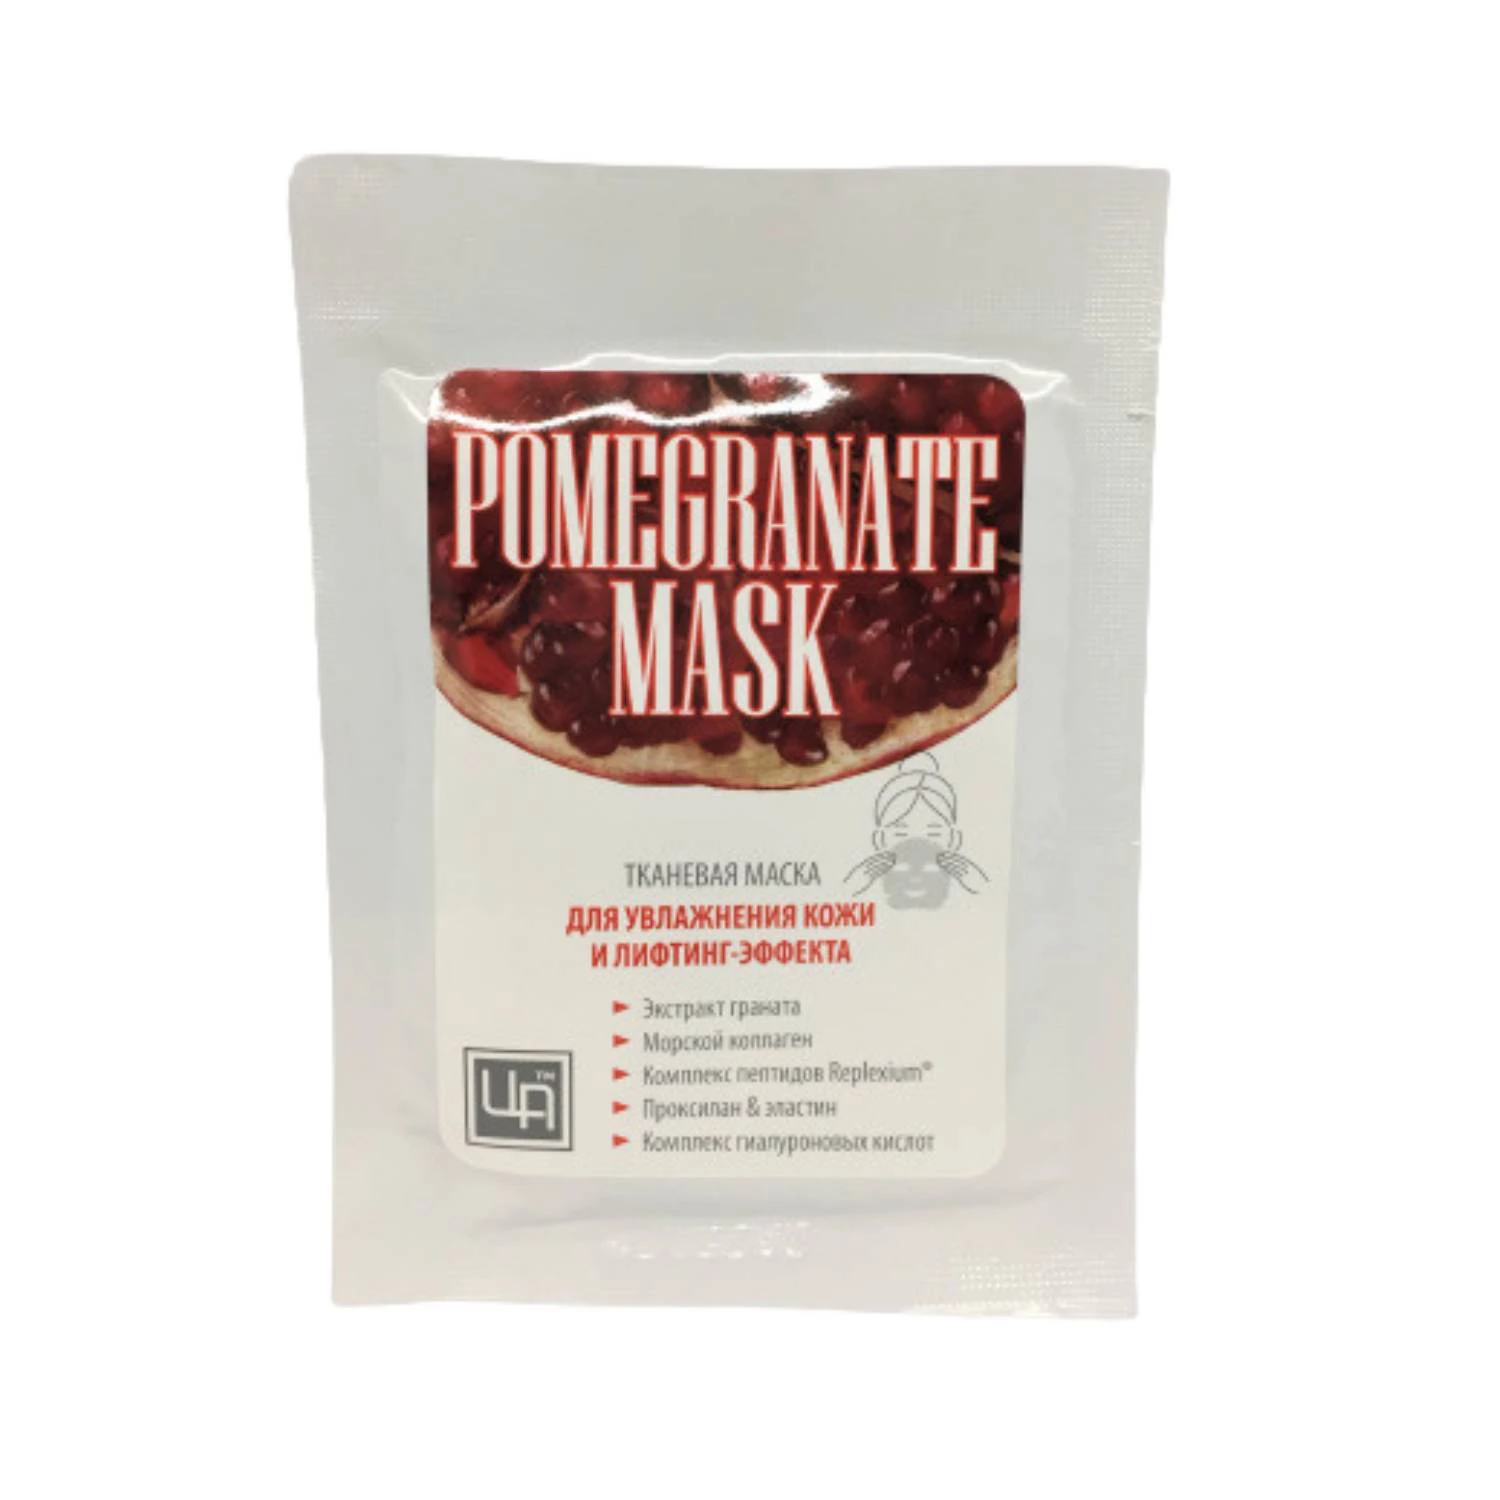 Маска тканевая для увлажнения кожи лица и лифтинг эффекта Pomegranate mask фото 1